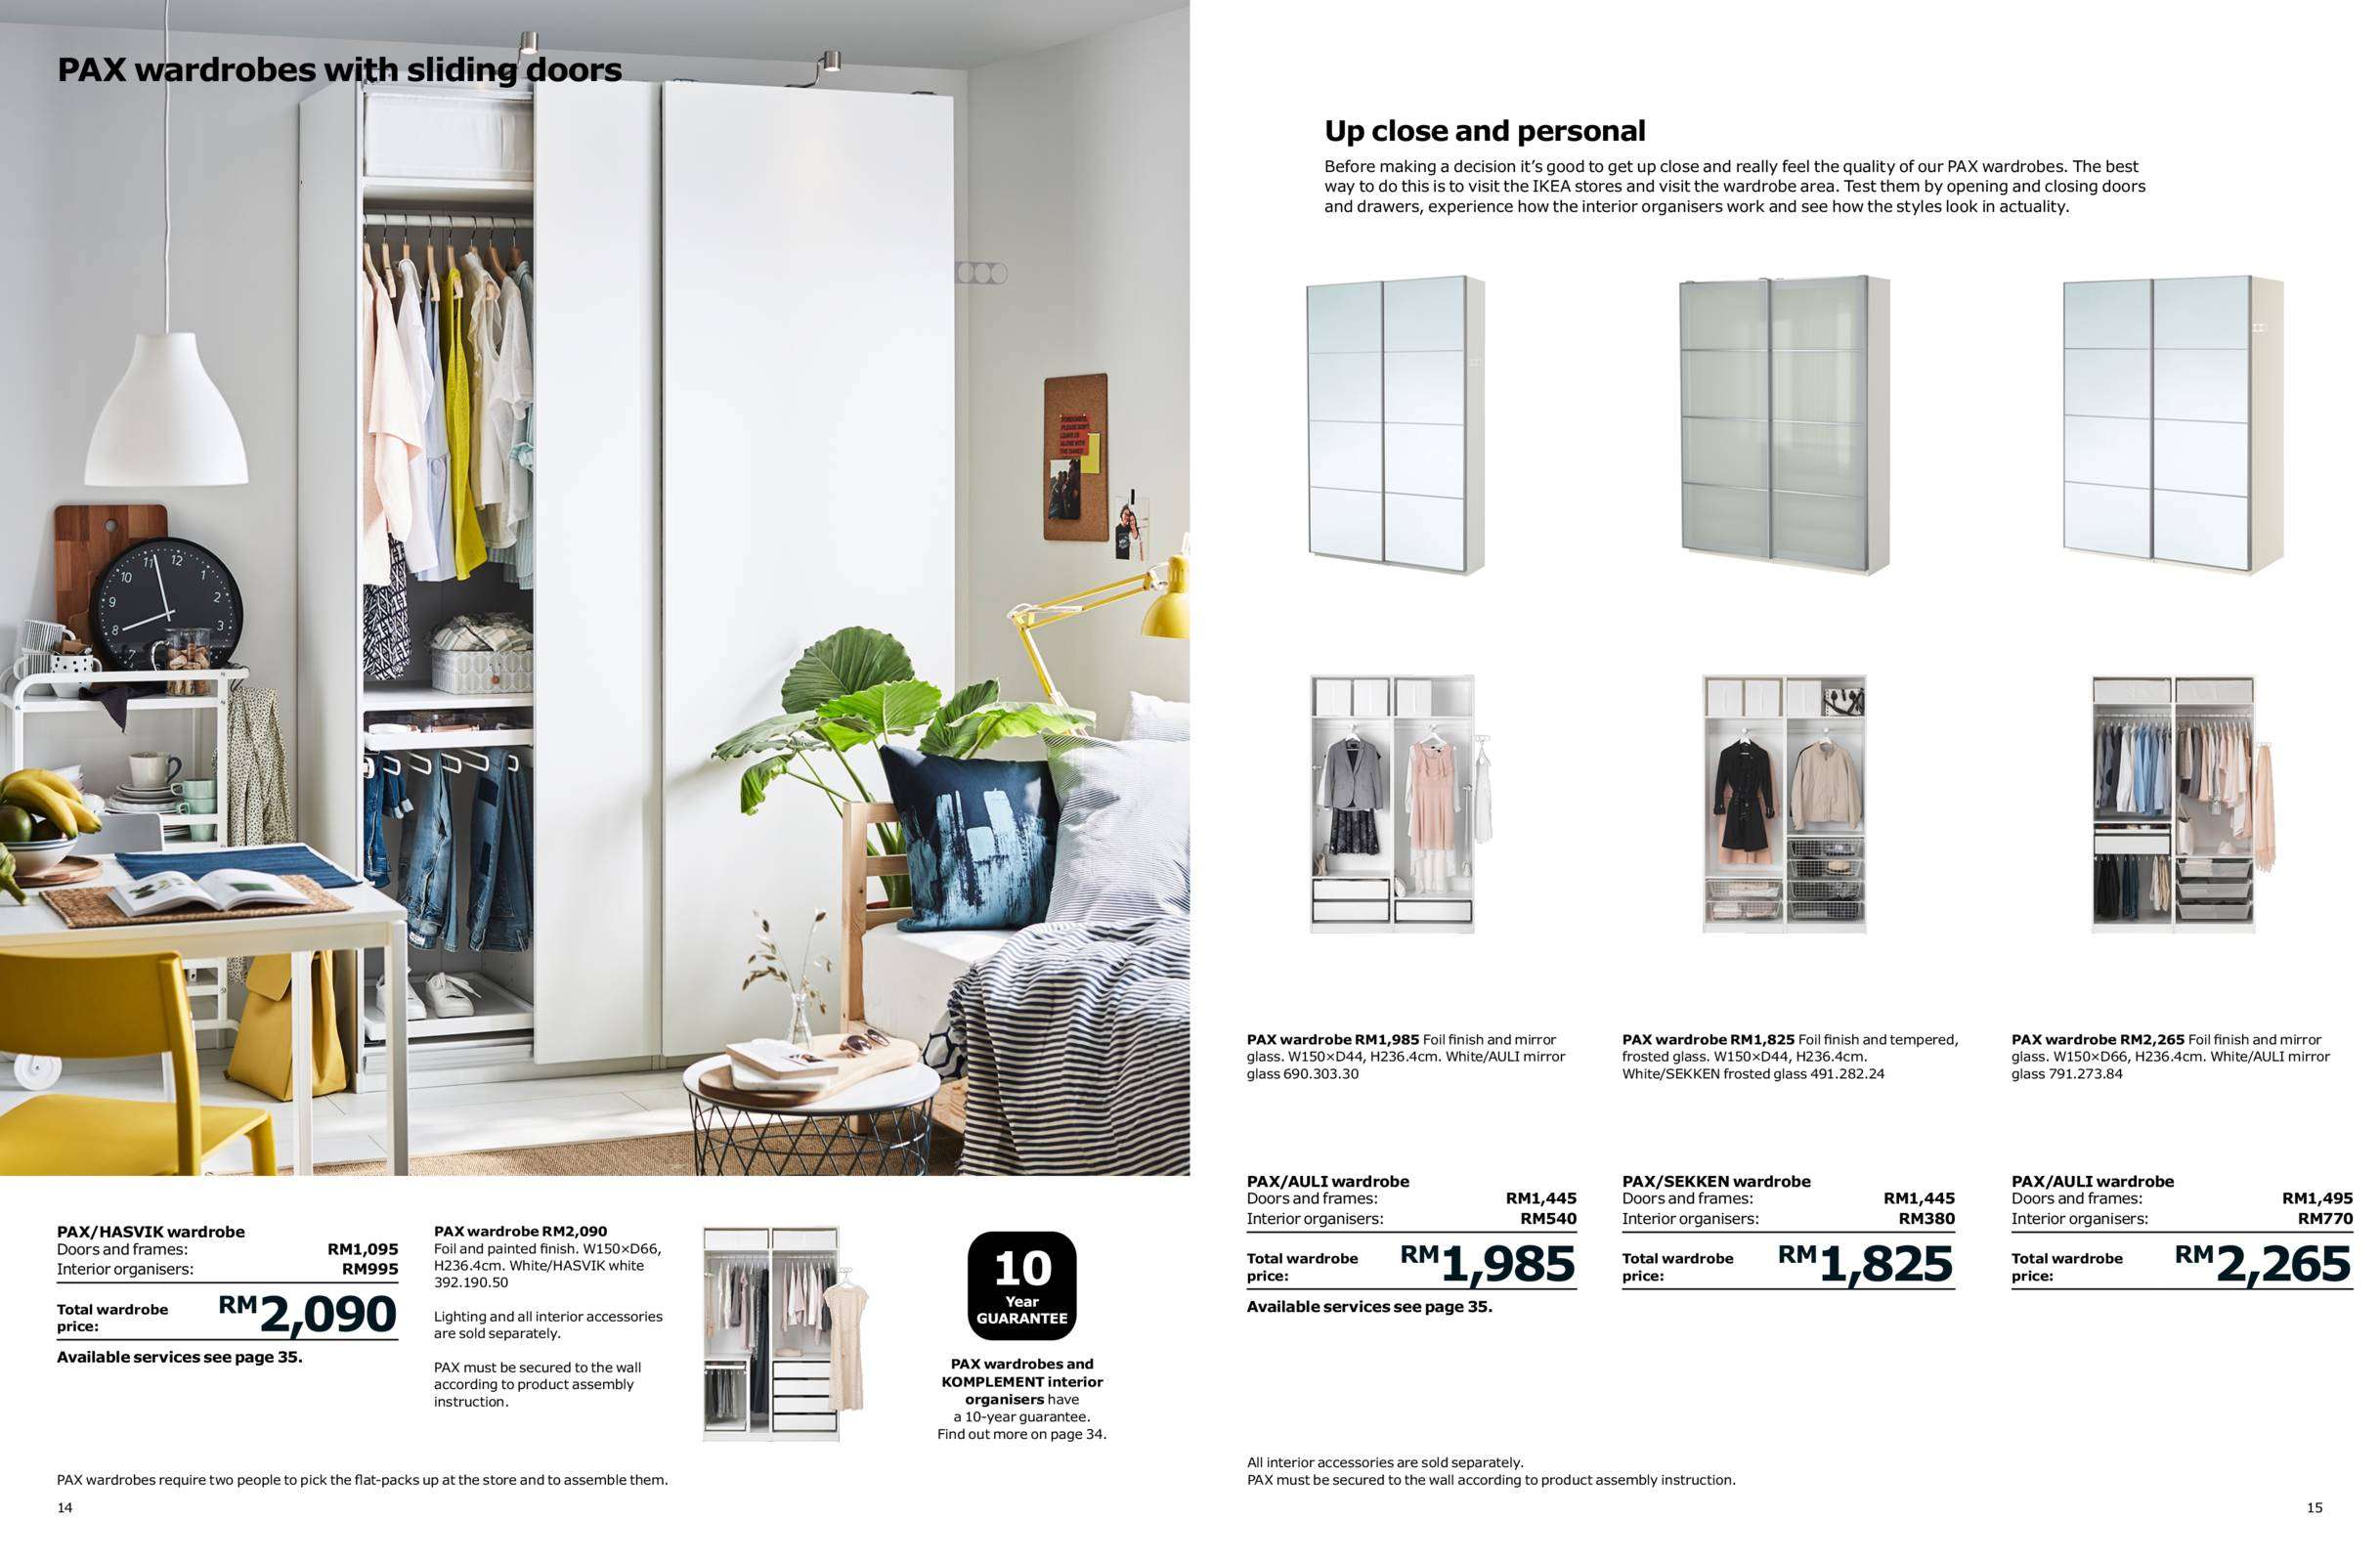 Ikea Malaysia 2018 Catalogue (19 Sep 2017 - 31 Jul 2018)